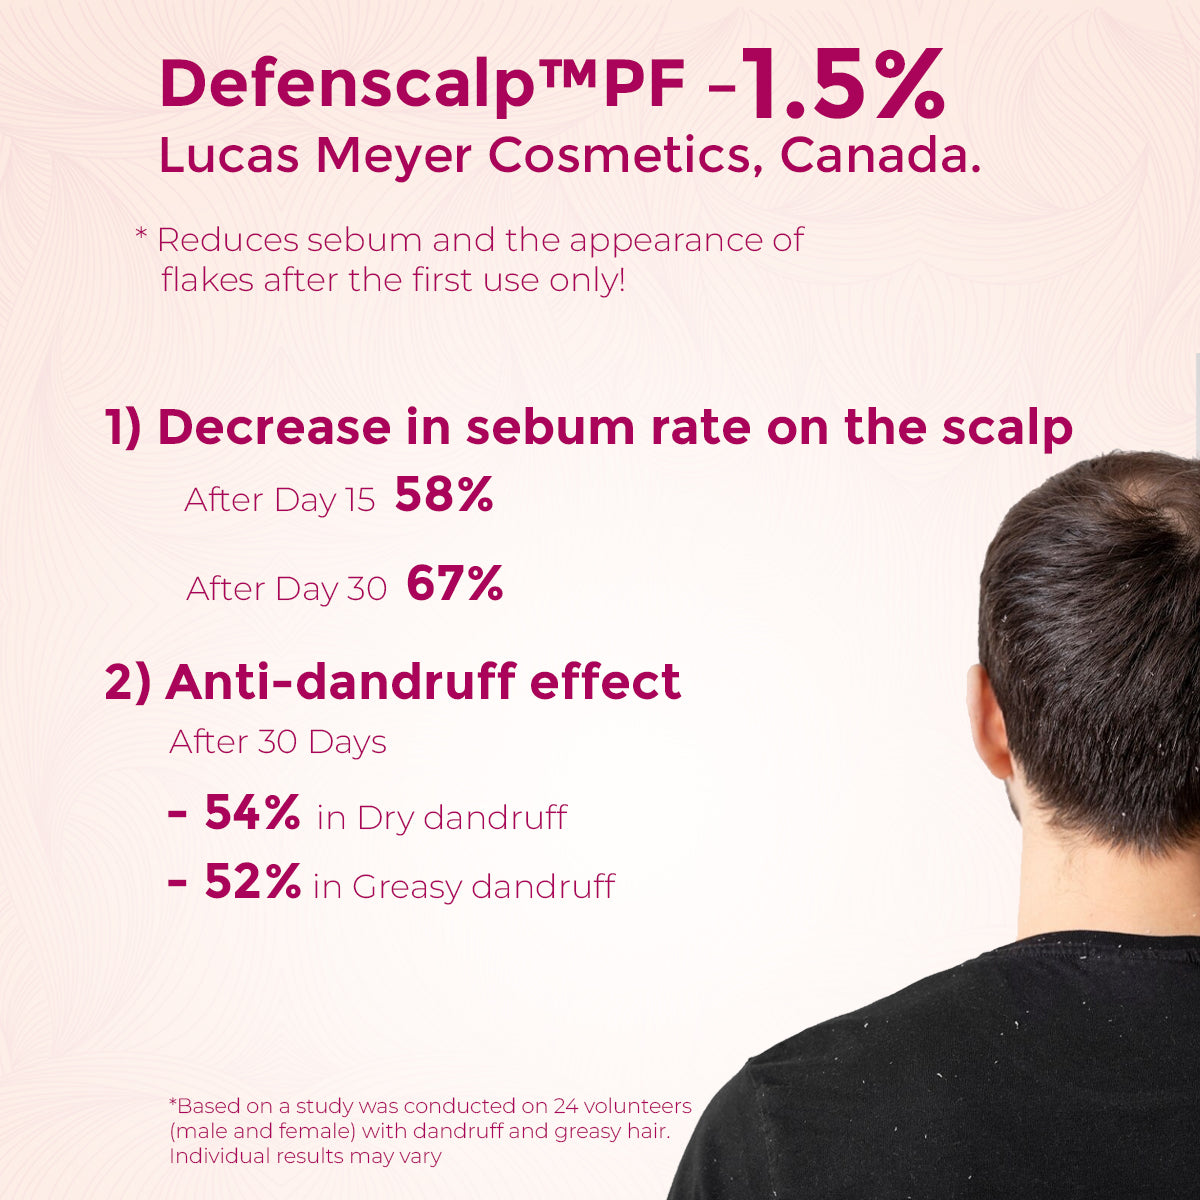 Healthyr-U Anti-Hair Fall Overnight Serum Defenscalp PF study